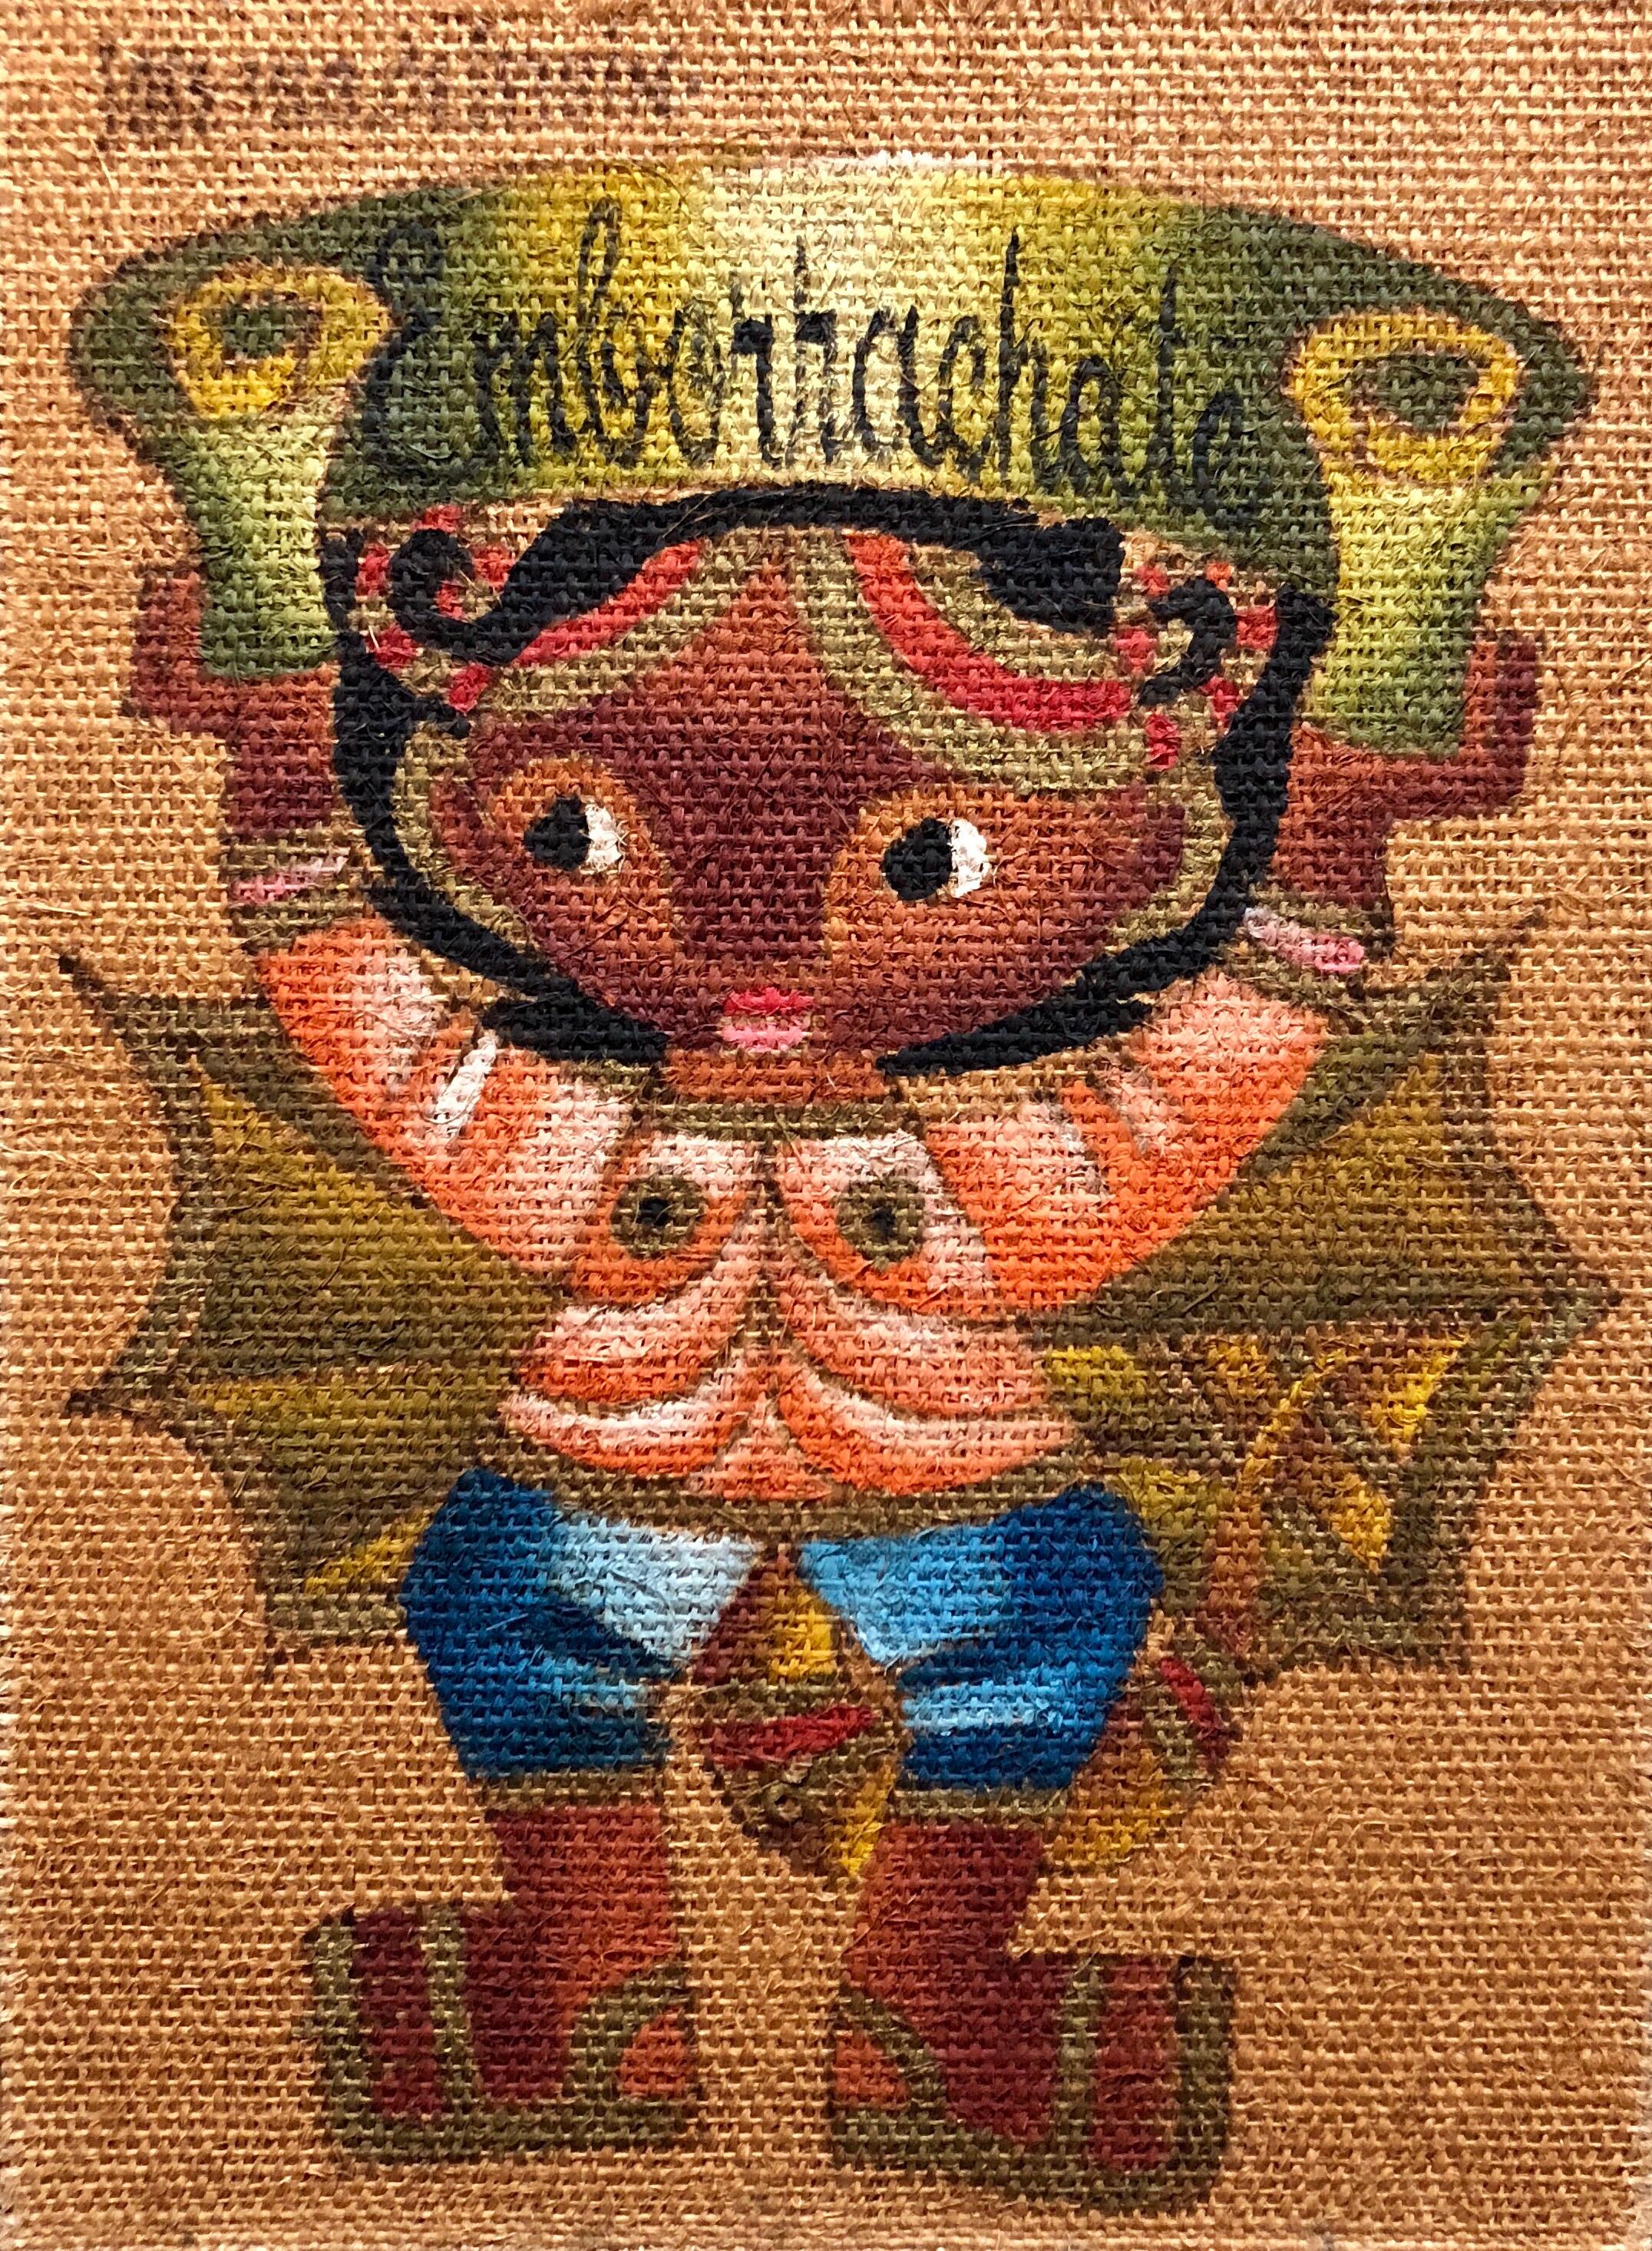 Jose Maria de Servin Figurative Painting – Folk Art Mexikanisches Mädchen "Emborrachate" Ölgemälde auf Sackleinen